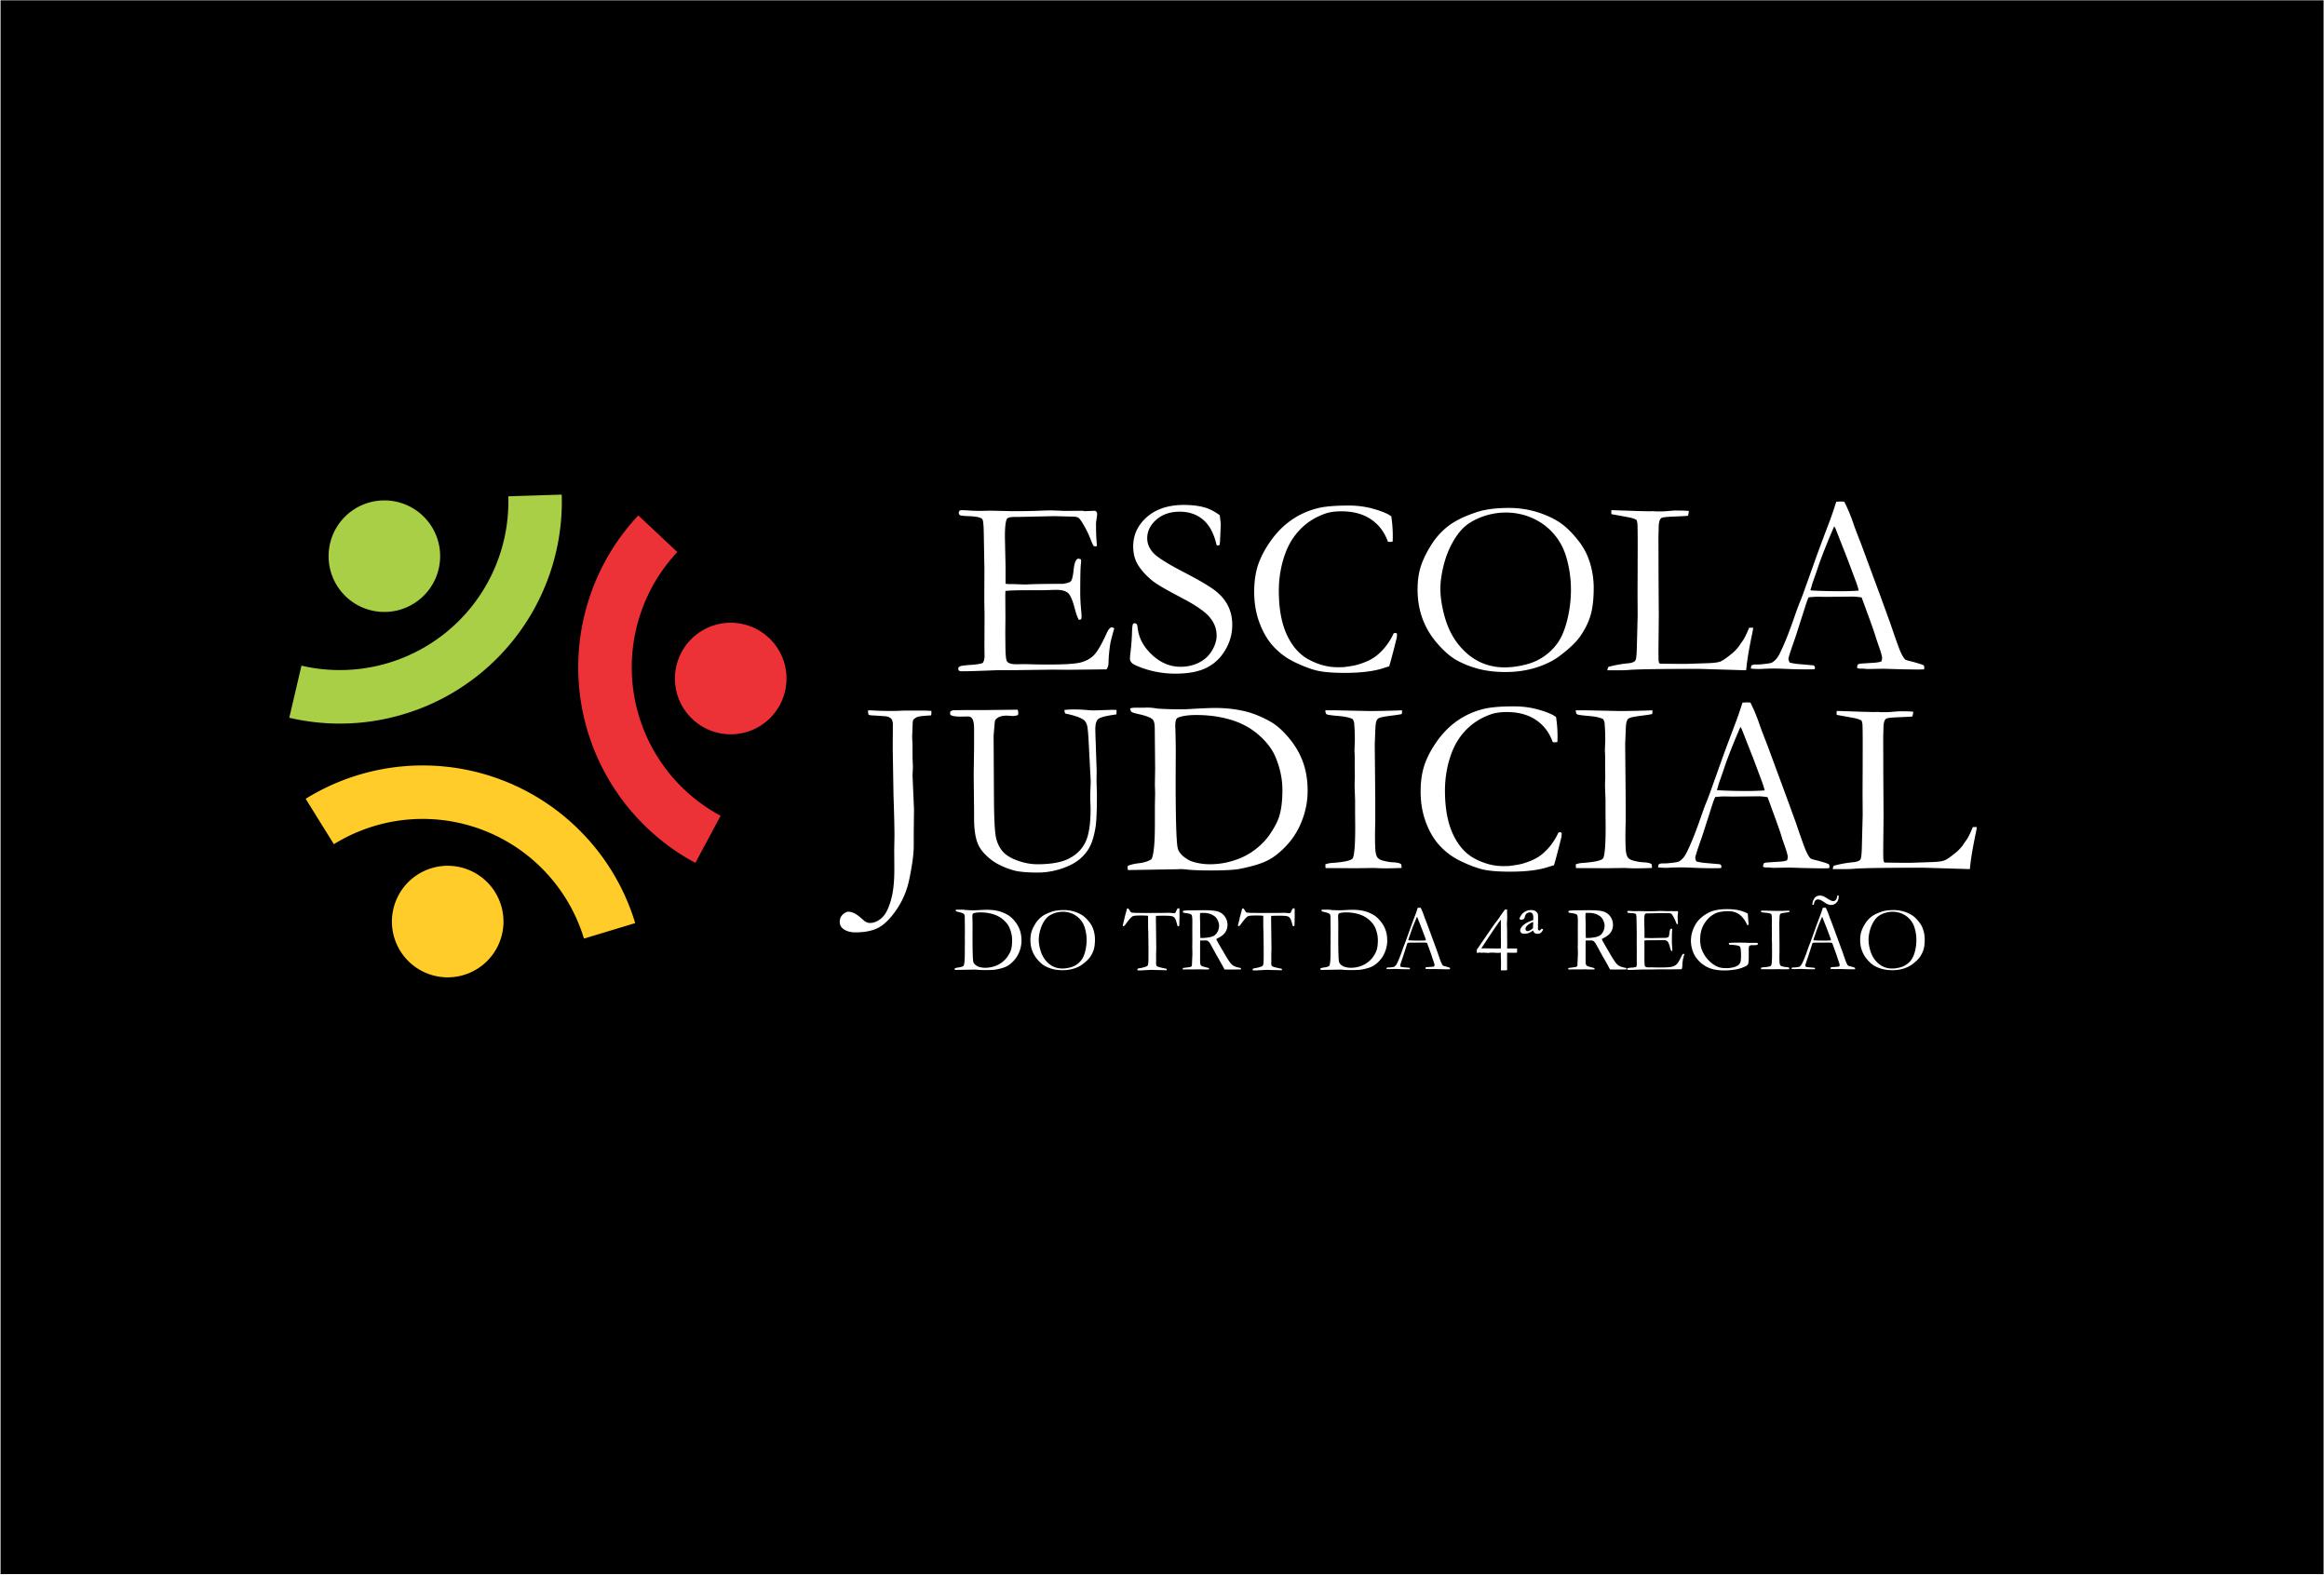 Logotipo da Escola Judicial do TRT4, em fundo preto.